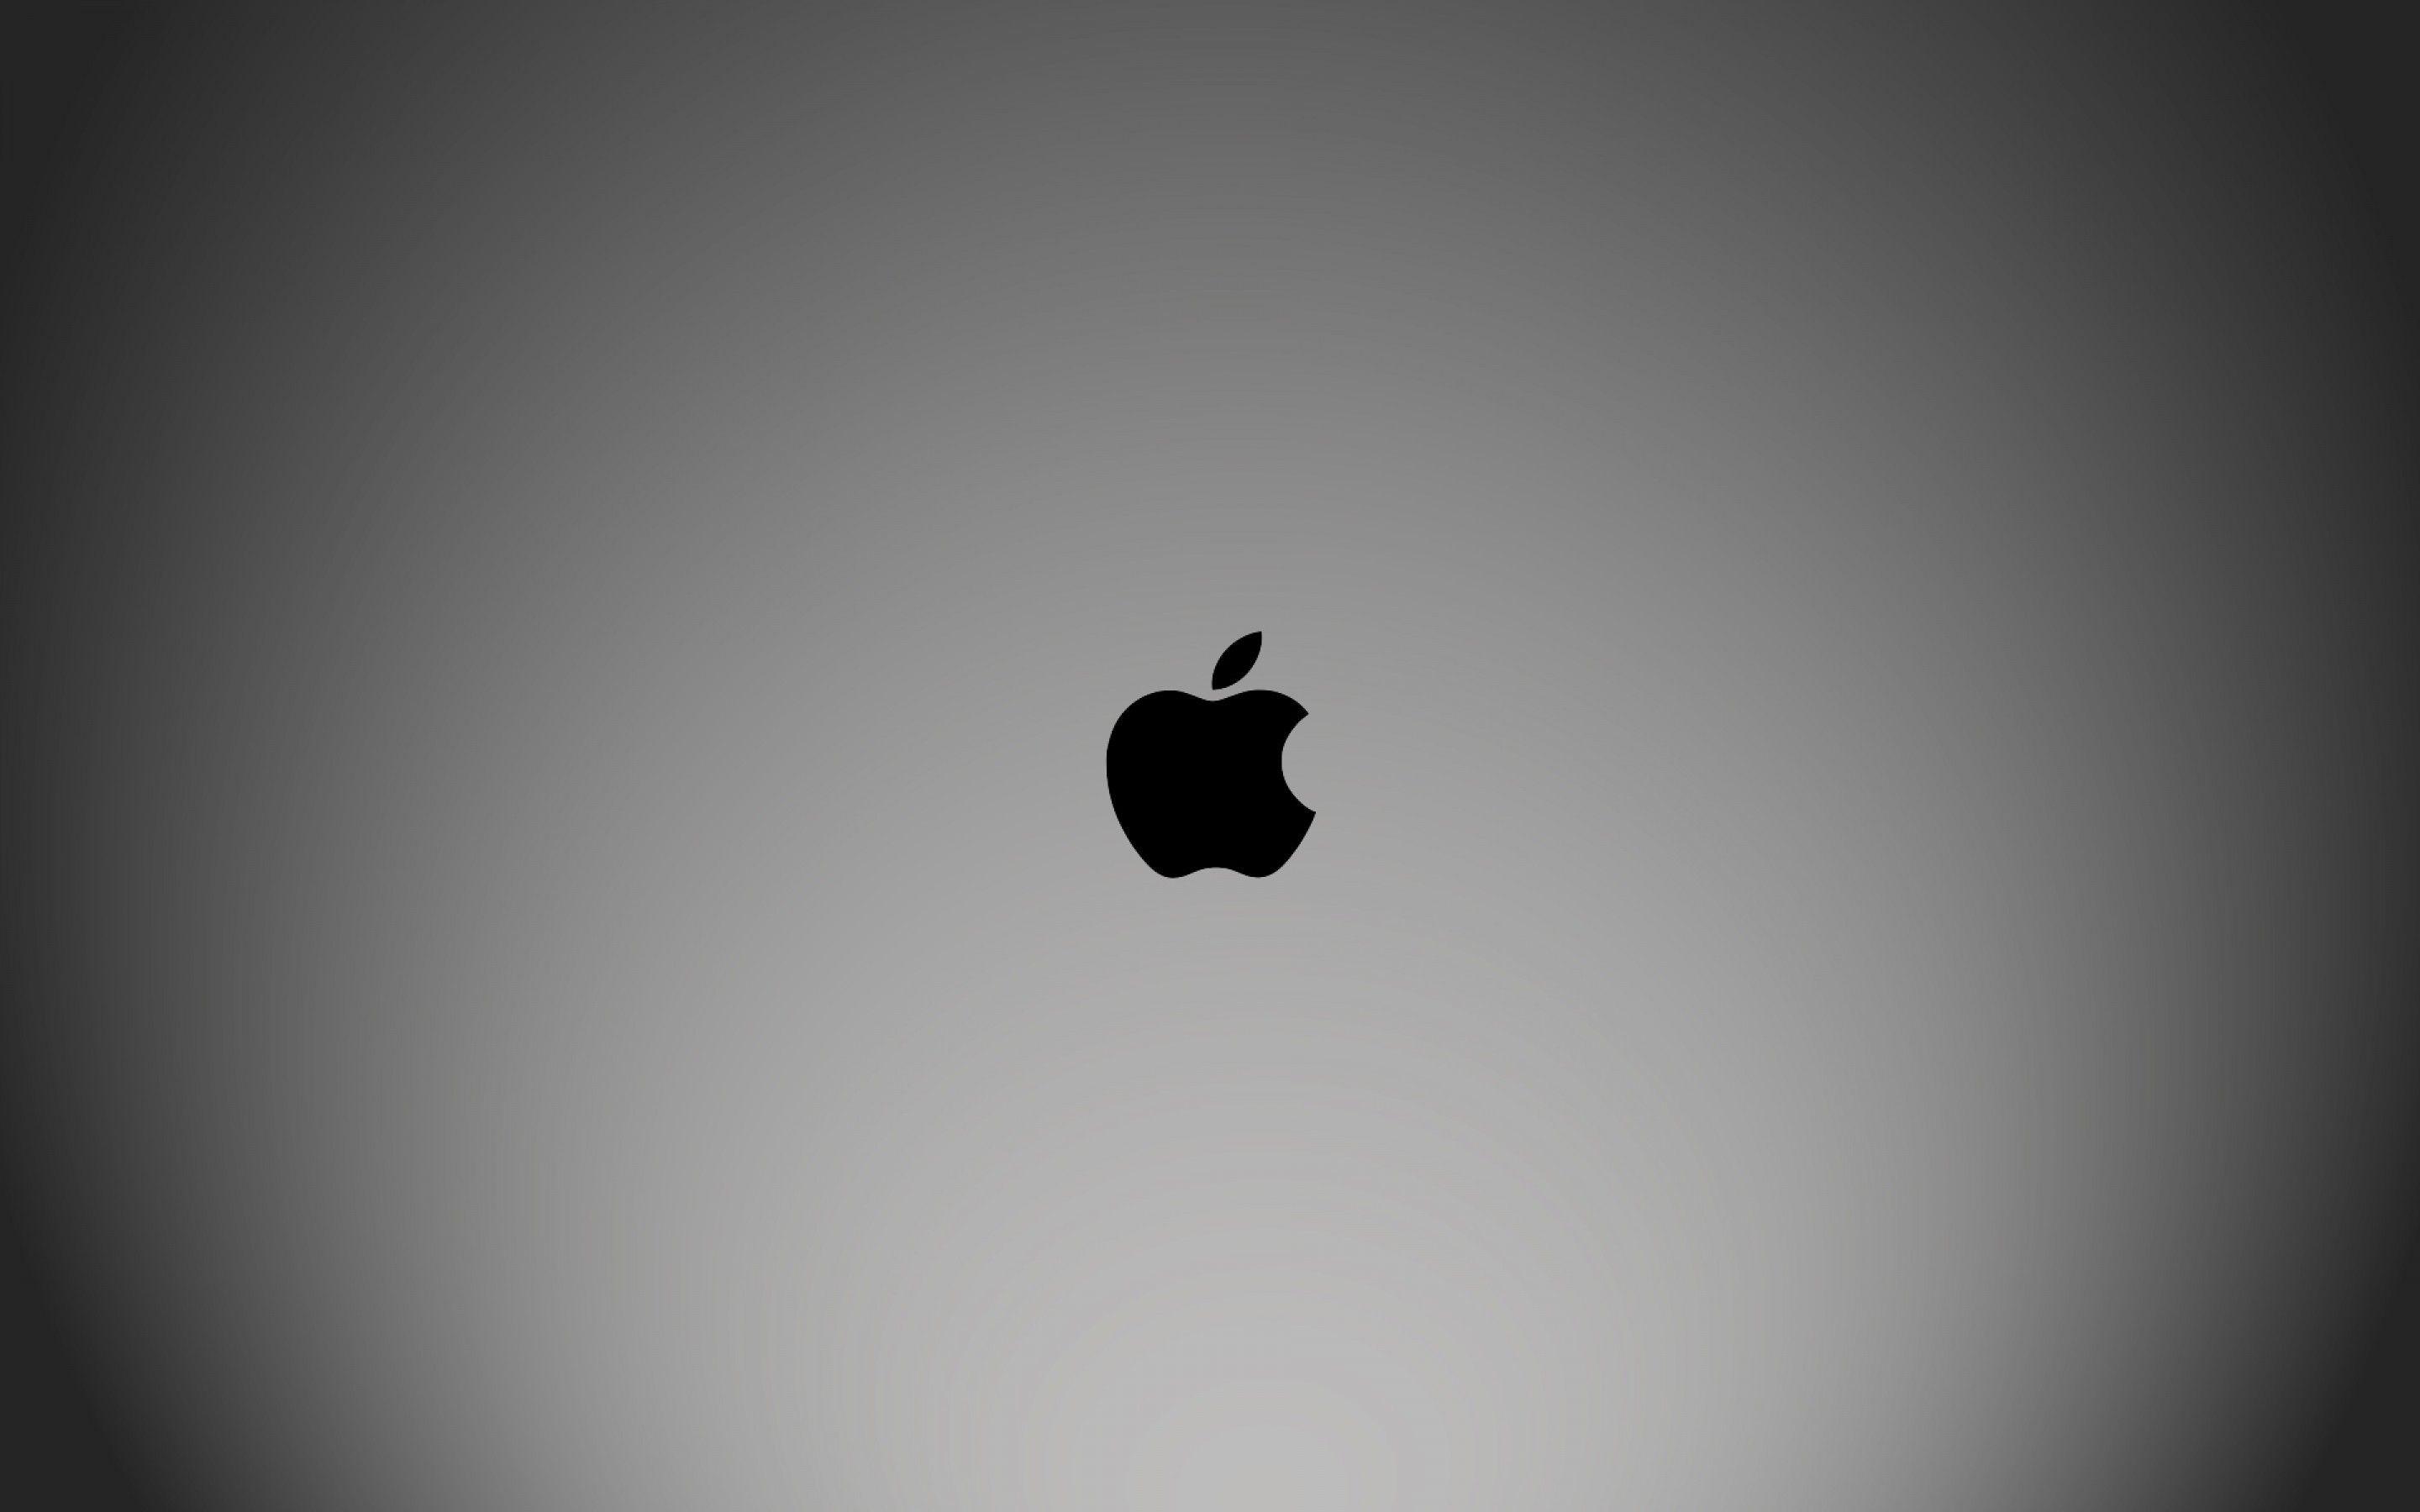 Macbook Pro Apple Logo Wallpapers Top Free Macbook Pro Apple Logo Backgrounds Wallpaperaccess